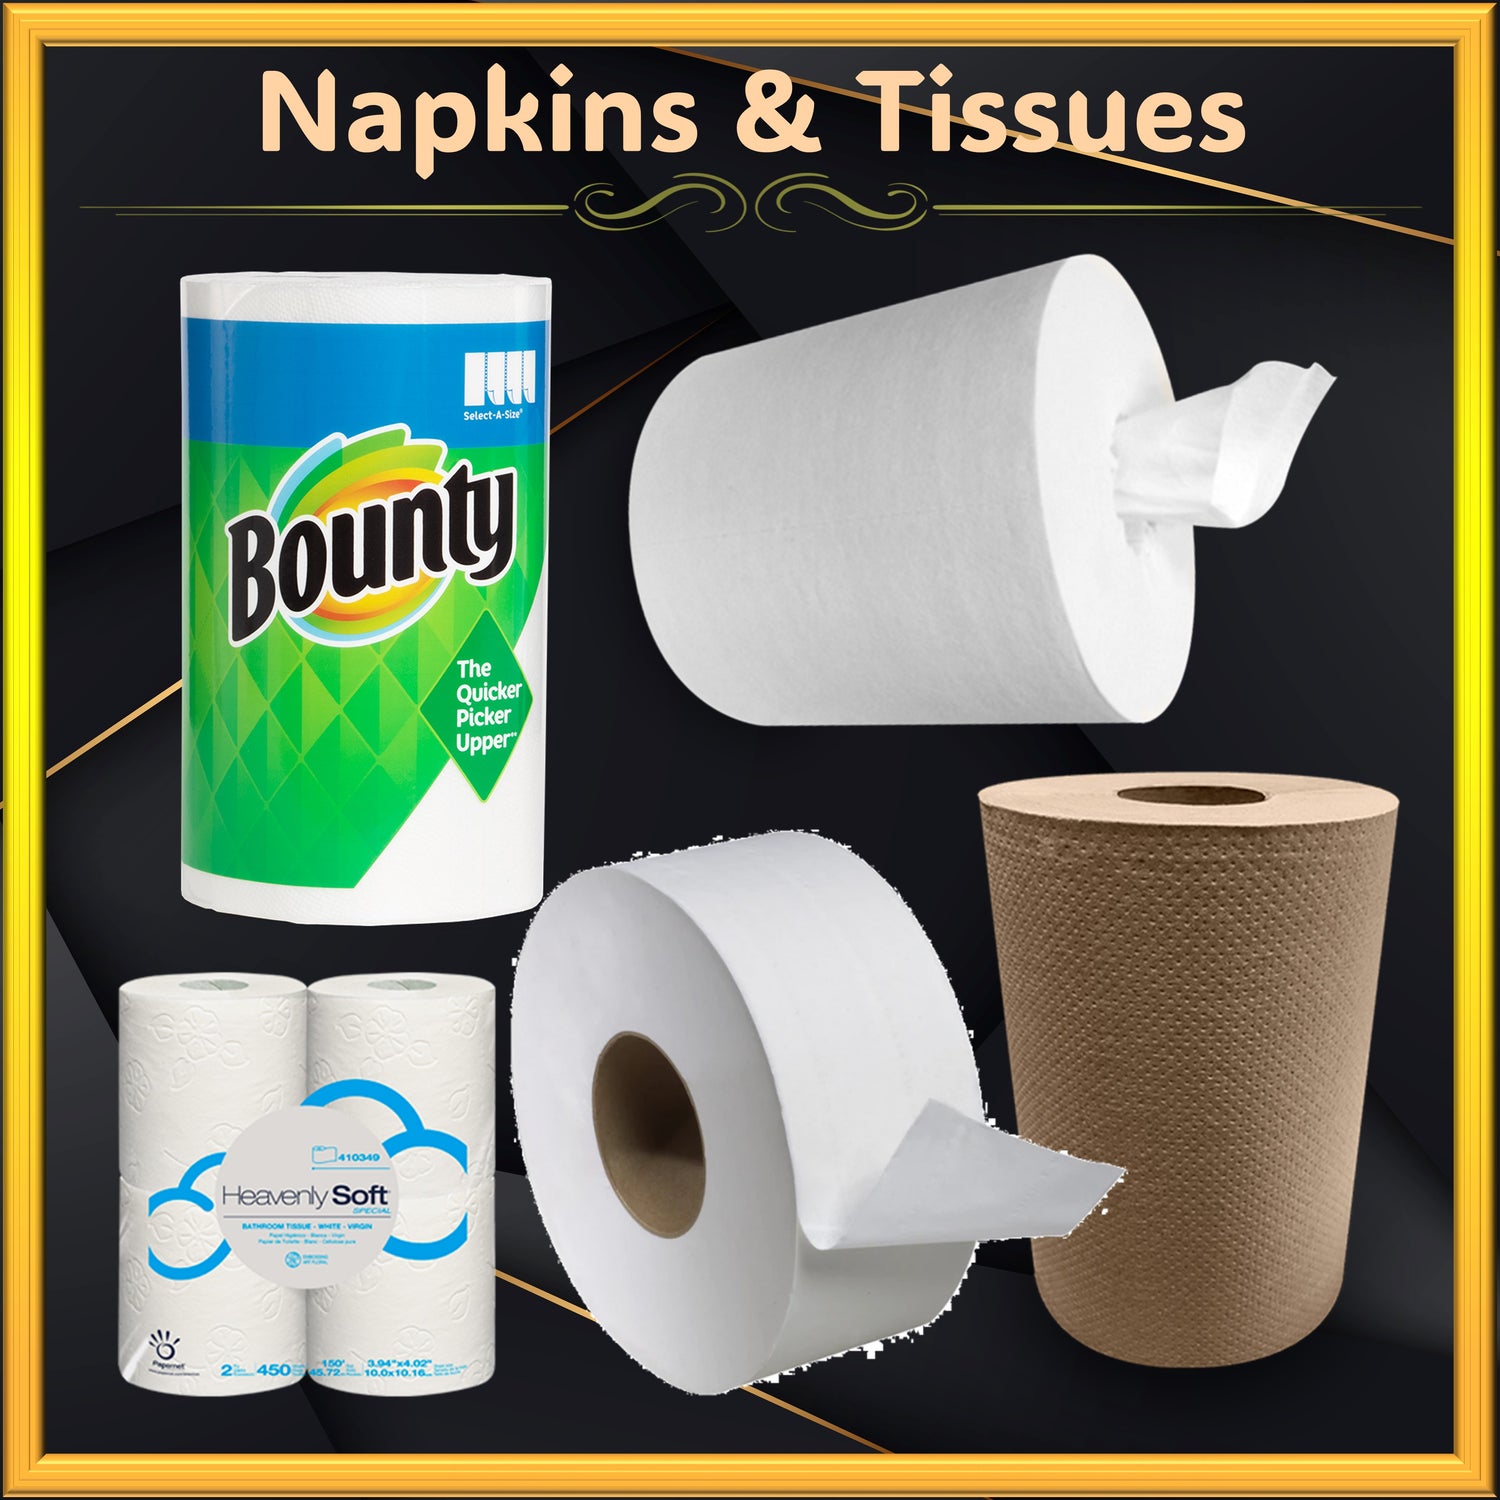 Napkins & Tissues